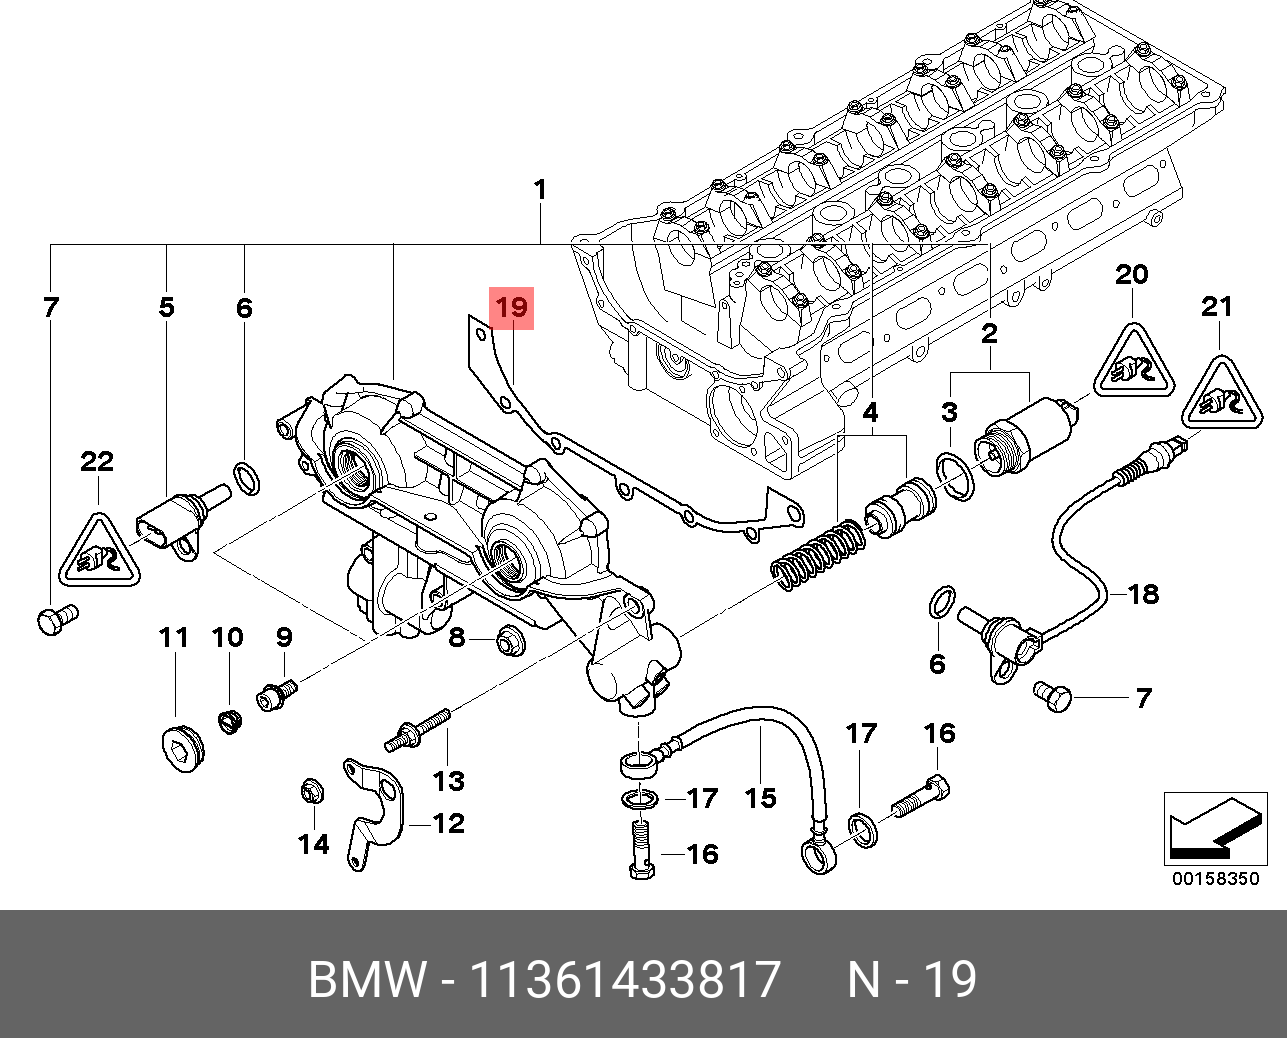 Прокладка крышки ГРМ - BMW 11 36 1 433 817